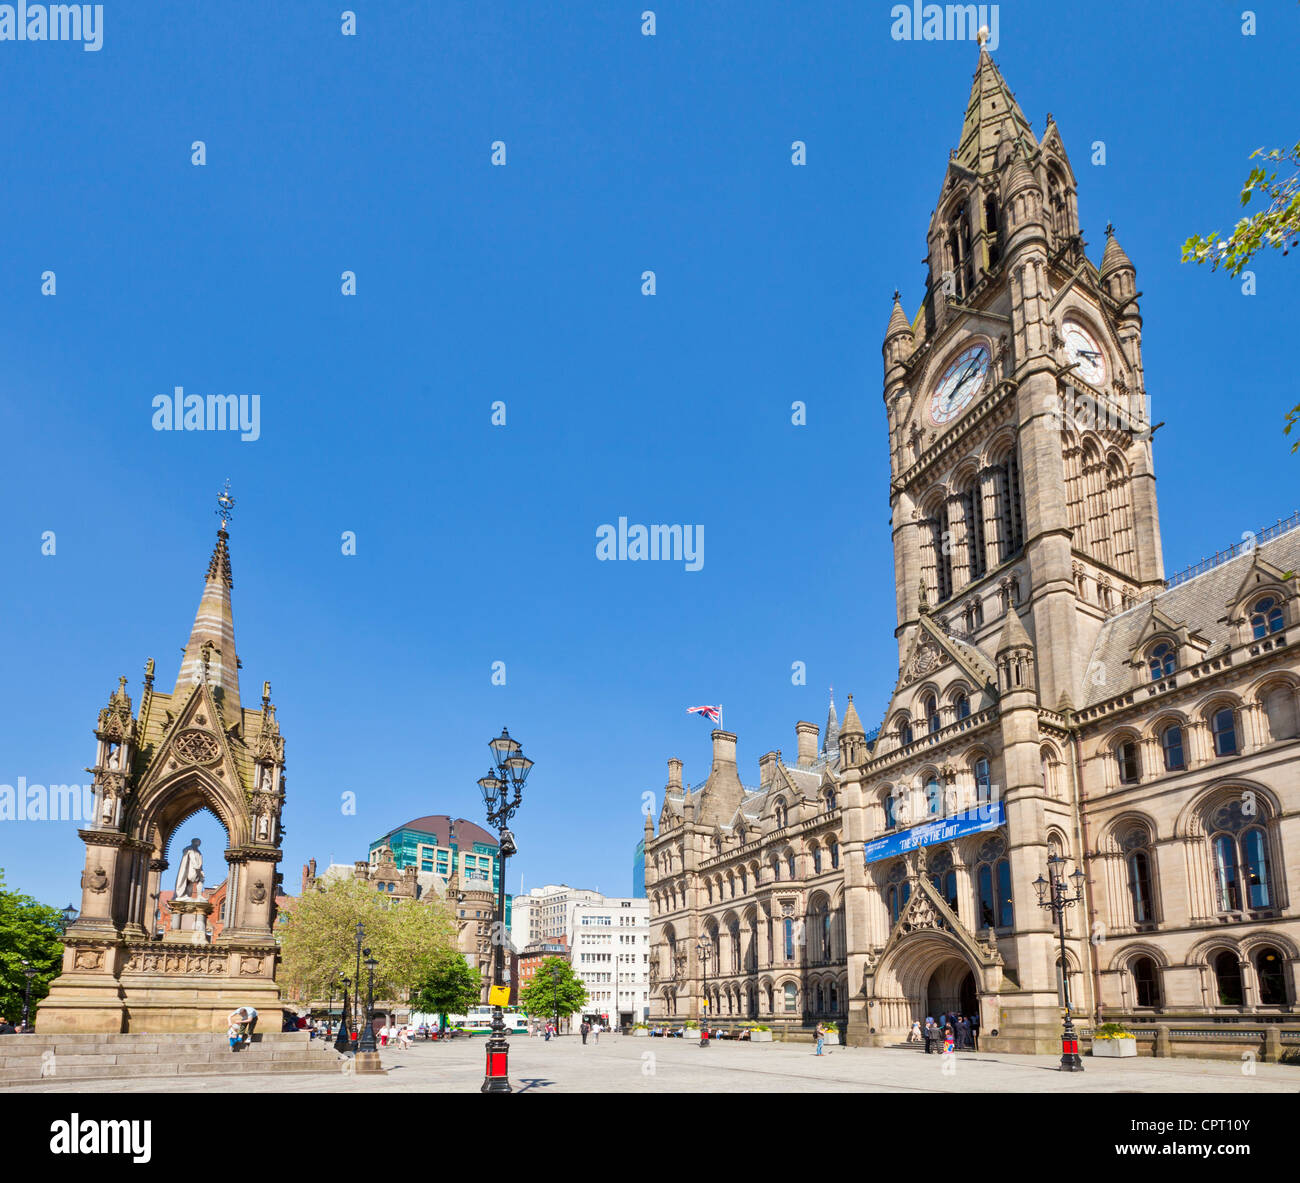 Rathaus von Manchester Albert Square Stadtzentrum von Manchester Manchester England UK GB EU Großeuropa Stockfoto